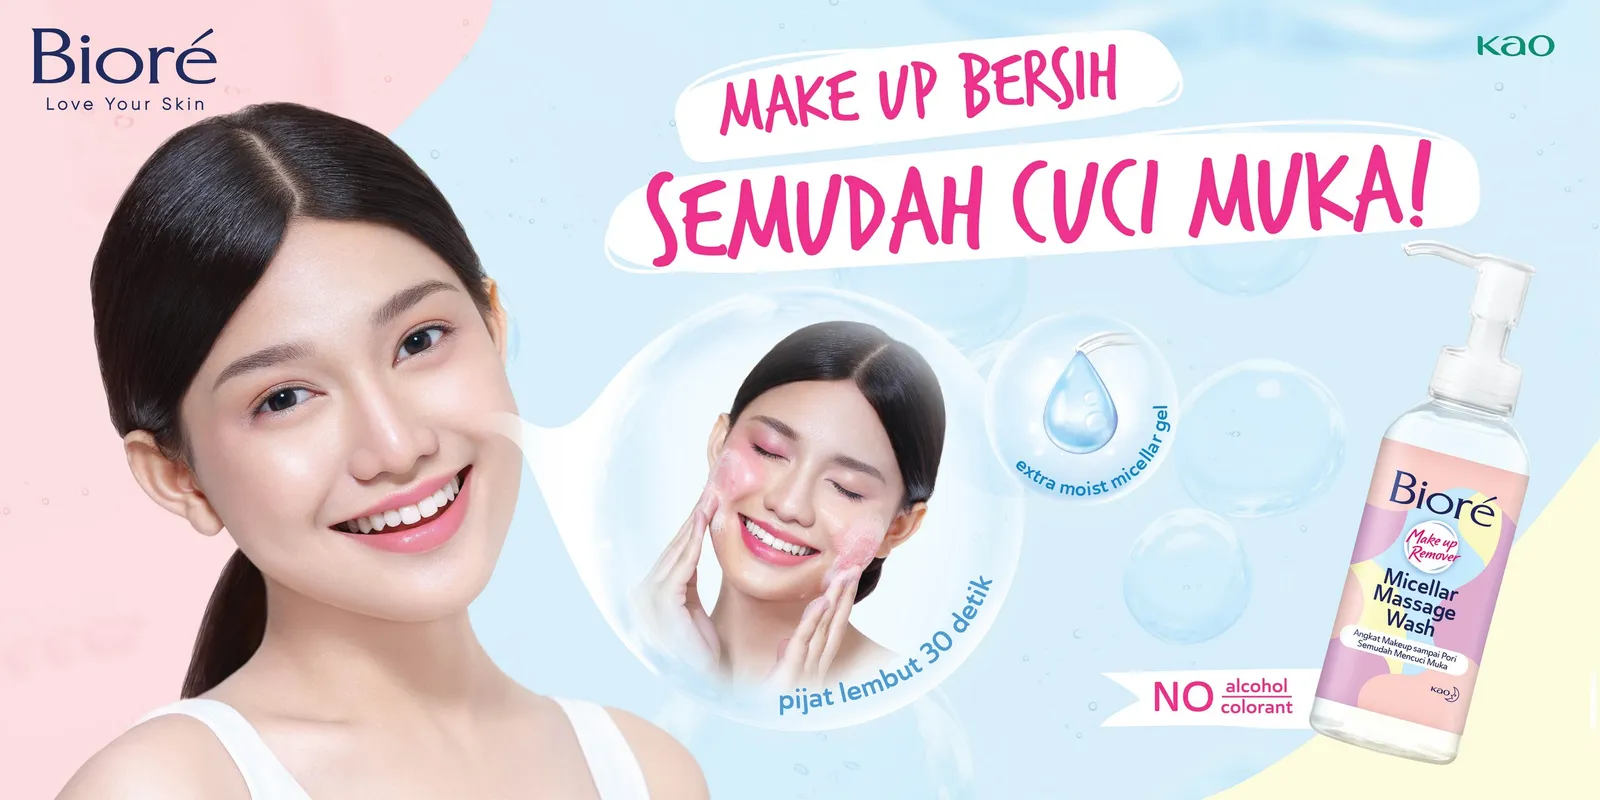 Angkat Makeup Semudah Cuci Muka! Review Biore Micellar Massage Wash 